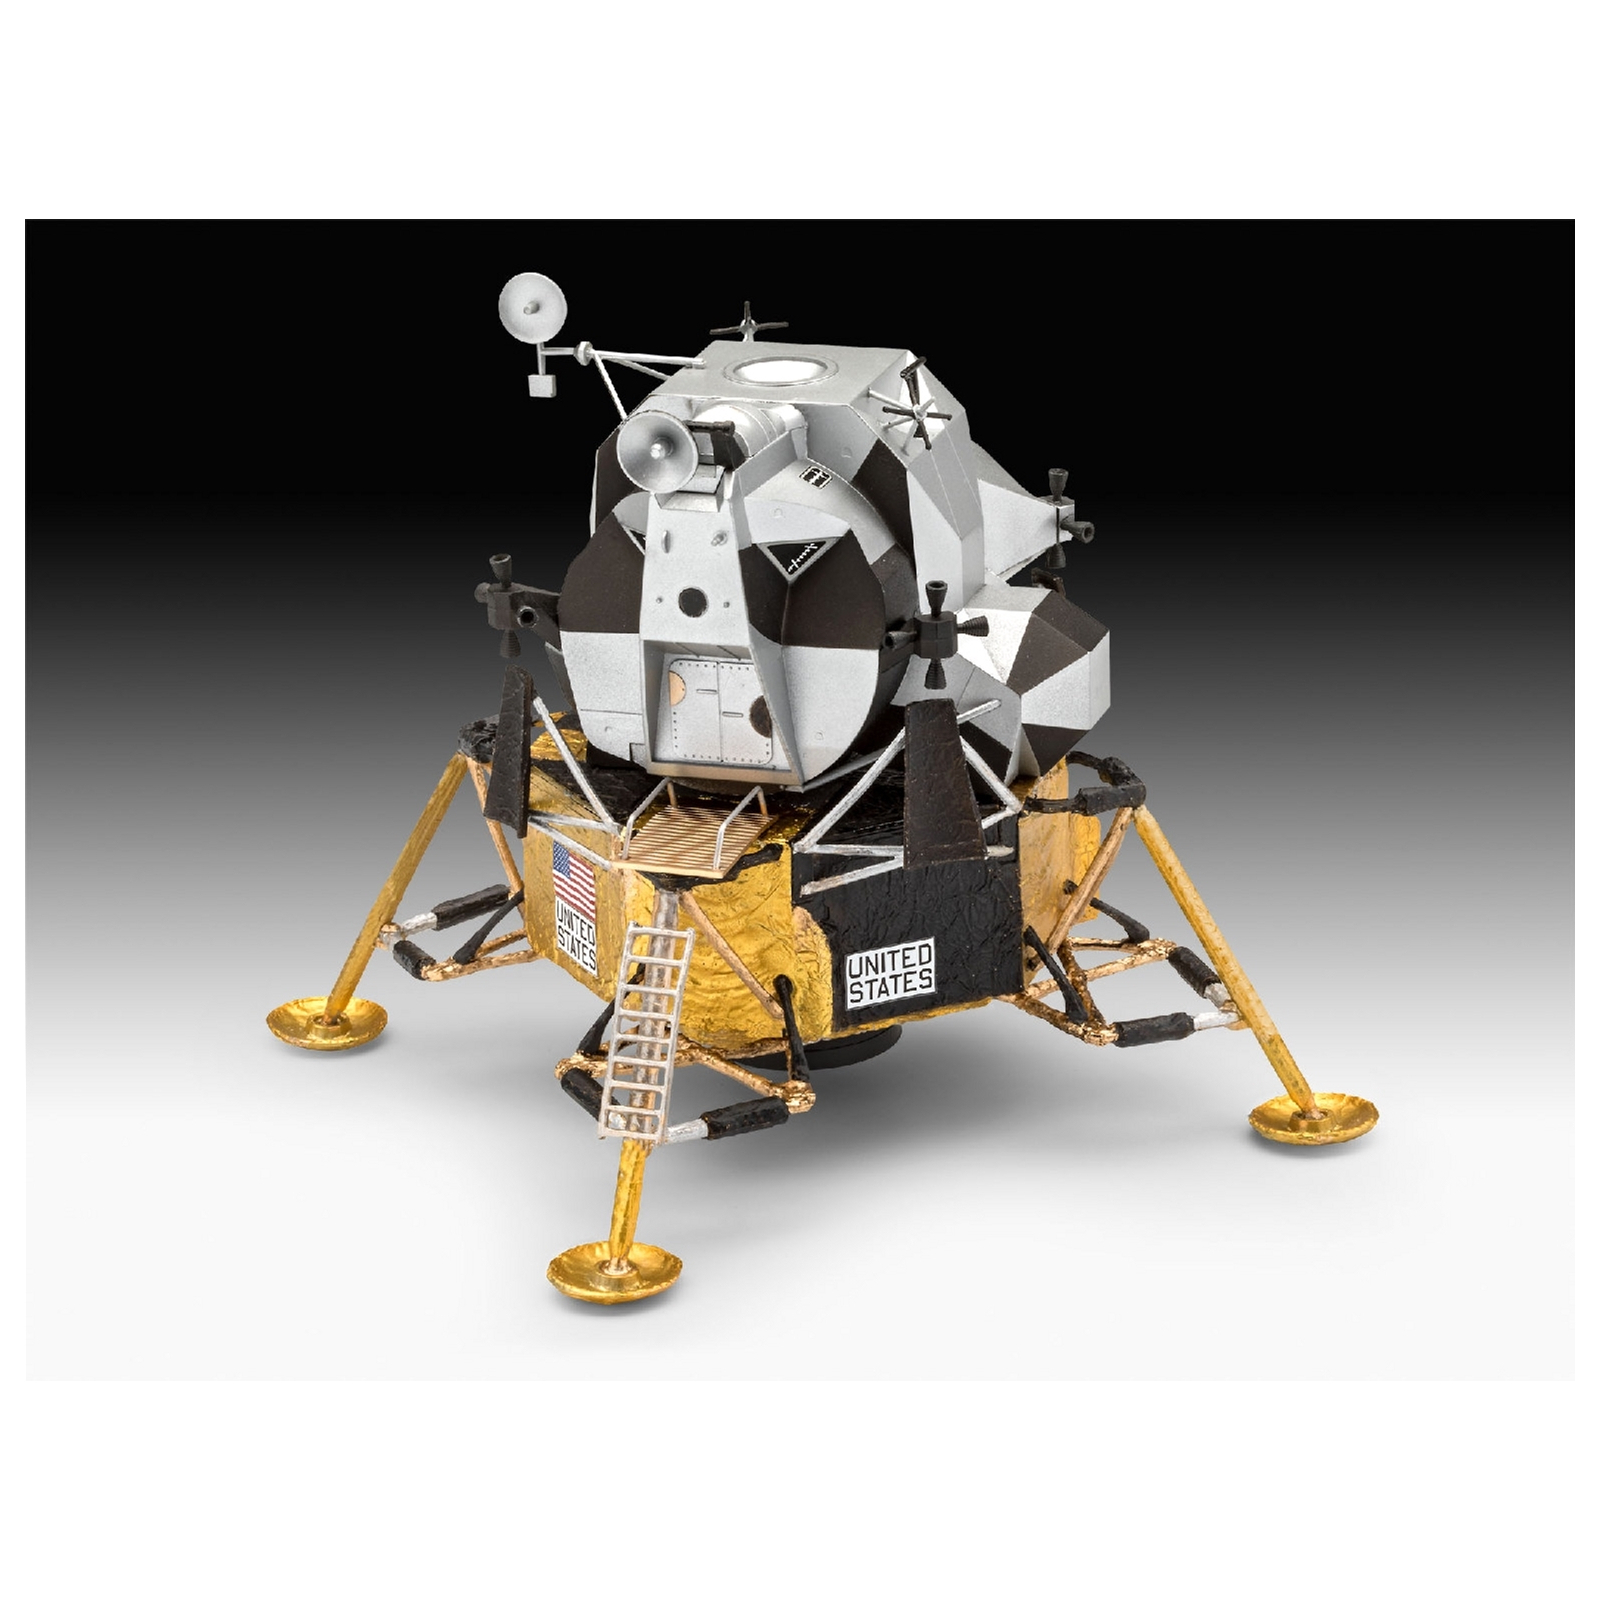 Сборная модель Revell Лунный модуль Орел миссии Аполлон 11 уровень 4, 1:48 (RVL-03701) изображение 4